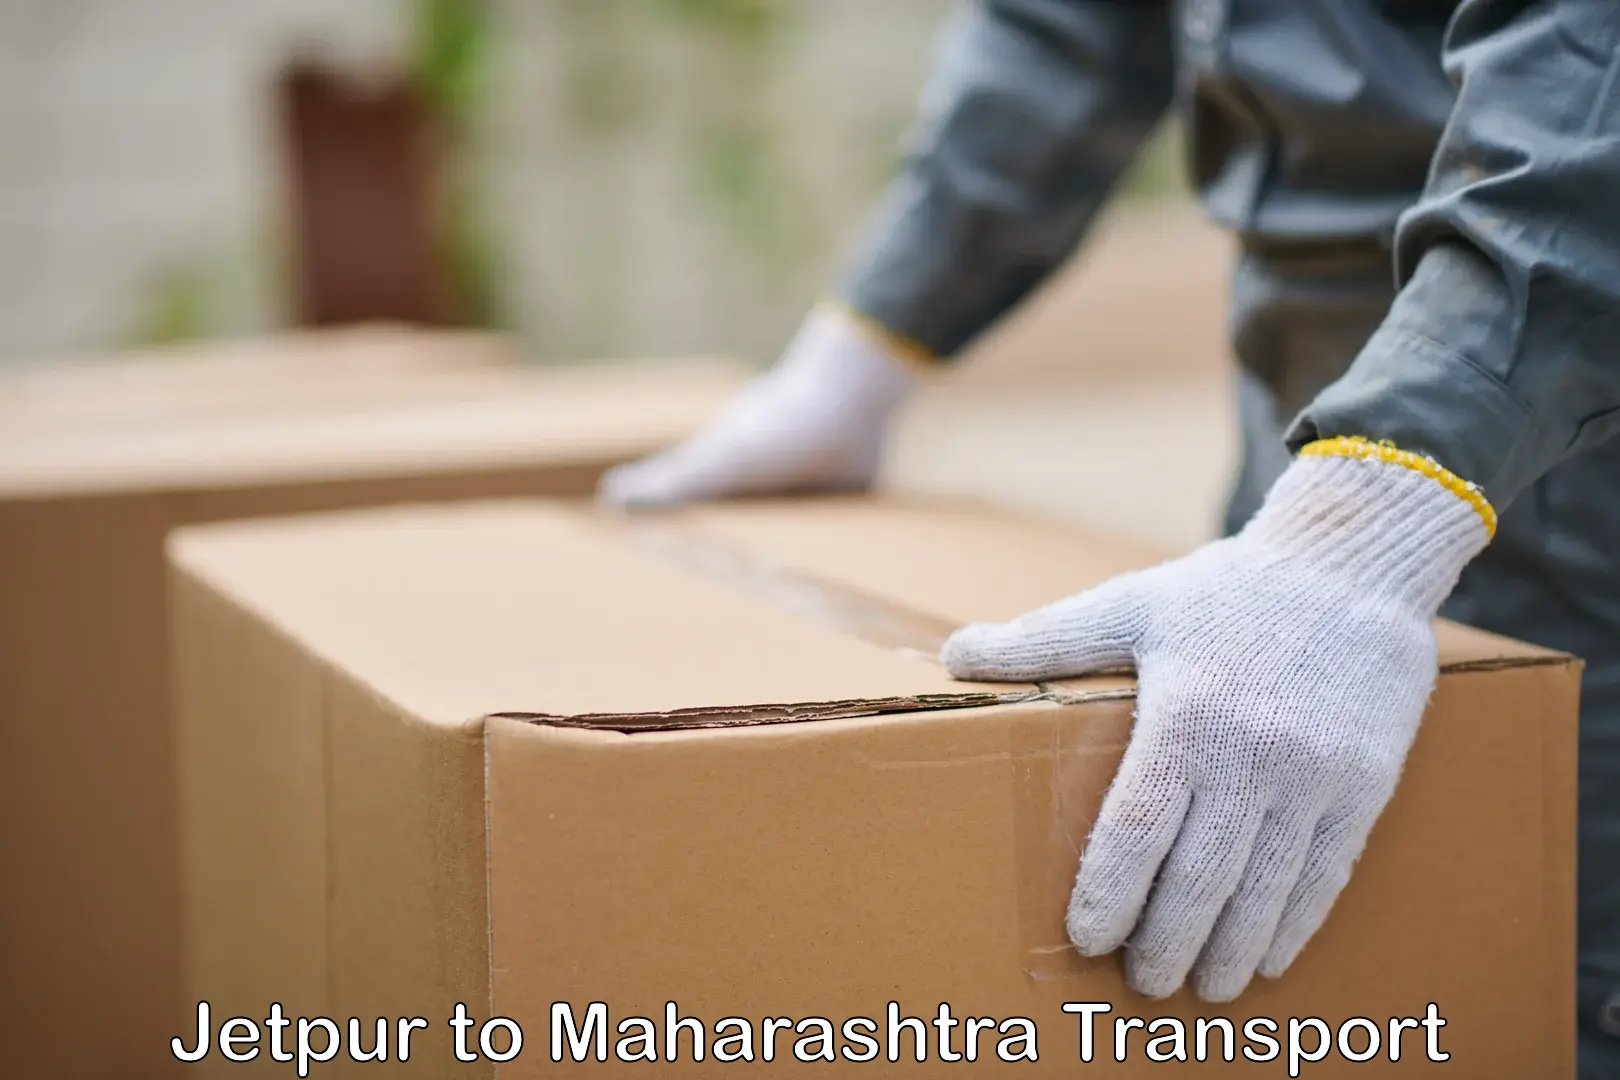 Furniture transport service Jetpur to Maharashtra